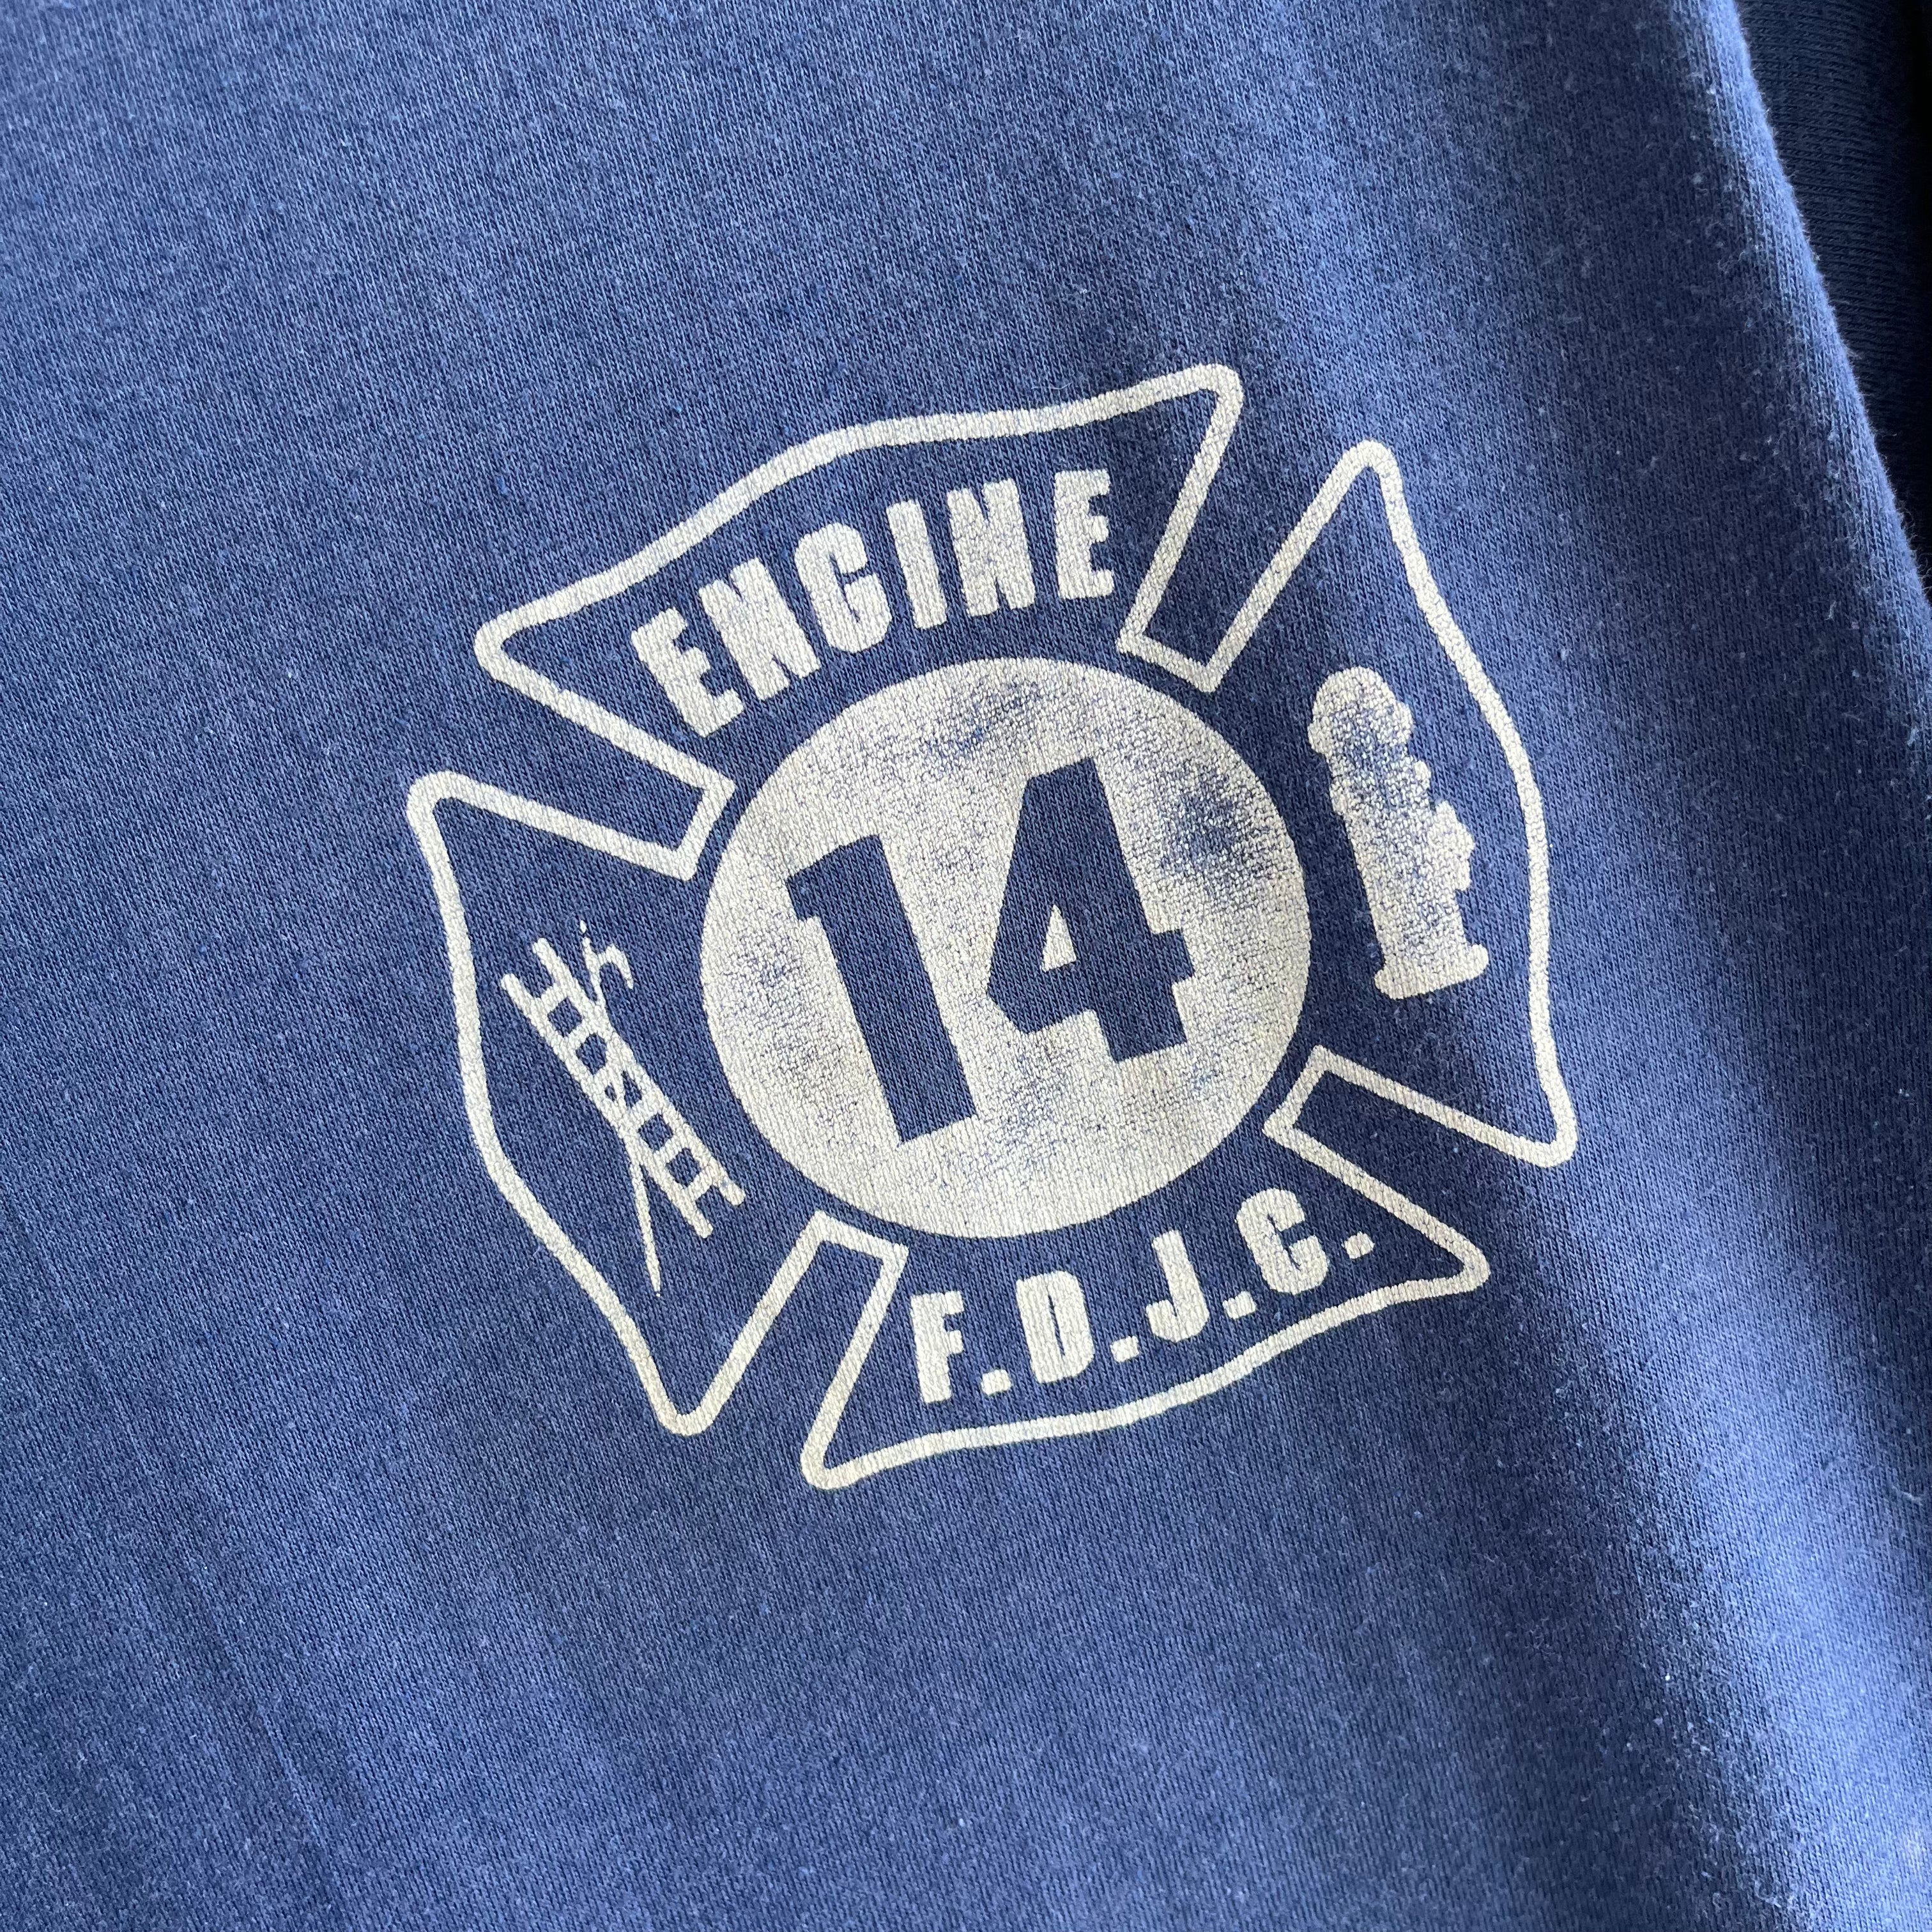 1980s F.D.J.C. Fire Department Jersey CIty? T-Shirt